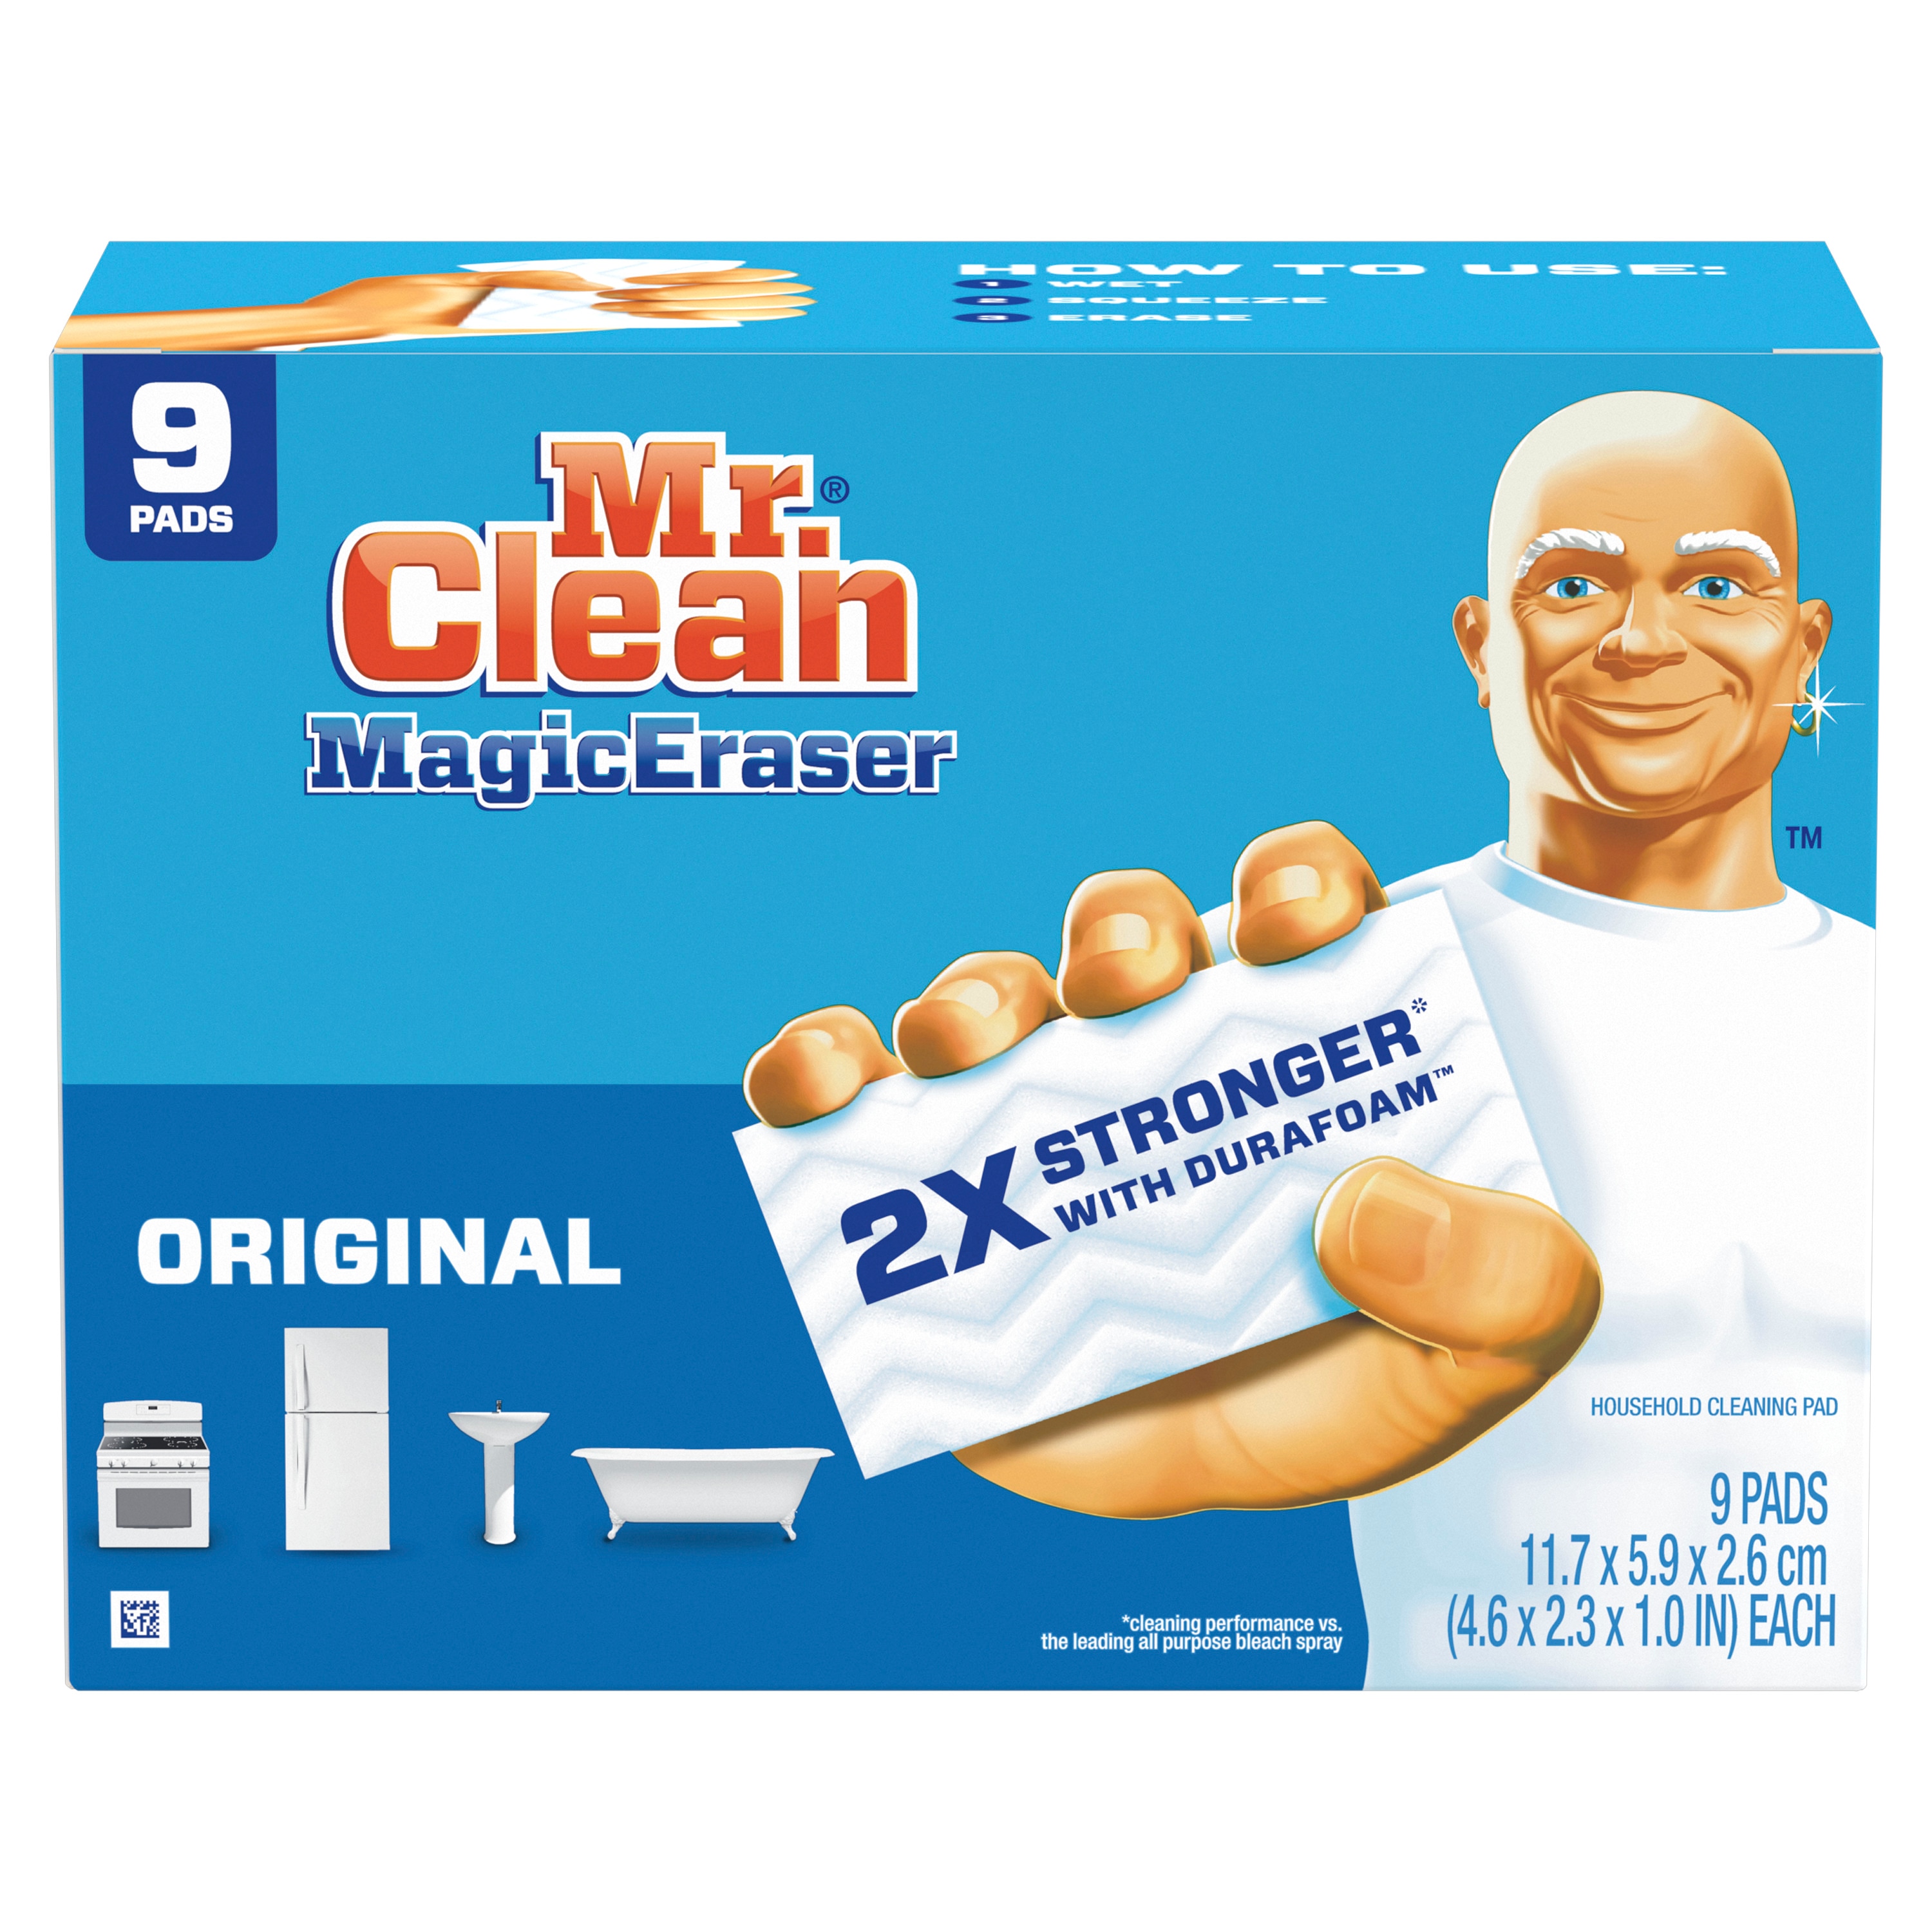 Với giấy lau vết bẩn mạnh 2 lần với công nghệ Durafoam mới nhất của Mr. Clean, bạn sẽ không phải lo lắng về vết bẩn cứng đầu nữa. Nó sẽ đánh bay chúng chỉ trong tích tắc. Hãy xem hình ảnh liên quan để chứng kiến hiệu quả của sản phẩm này.